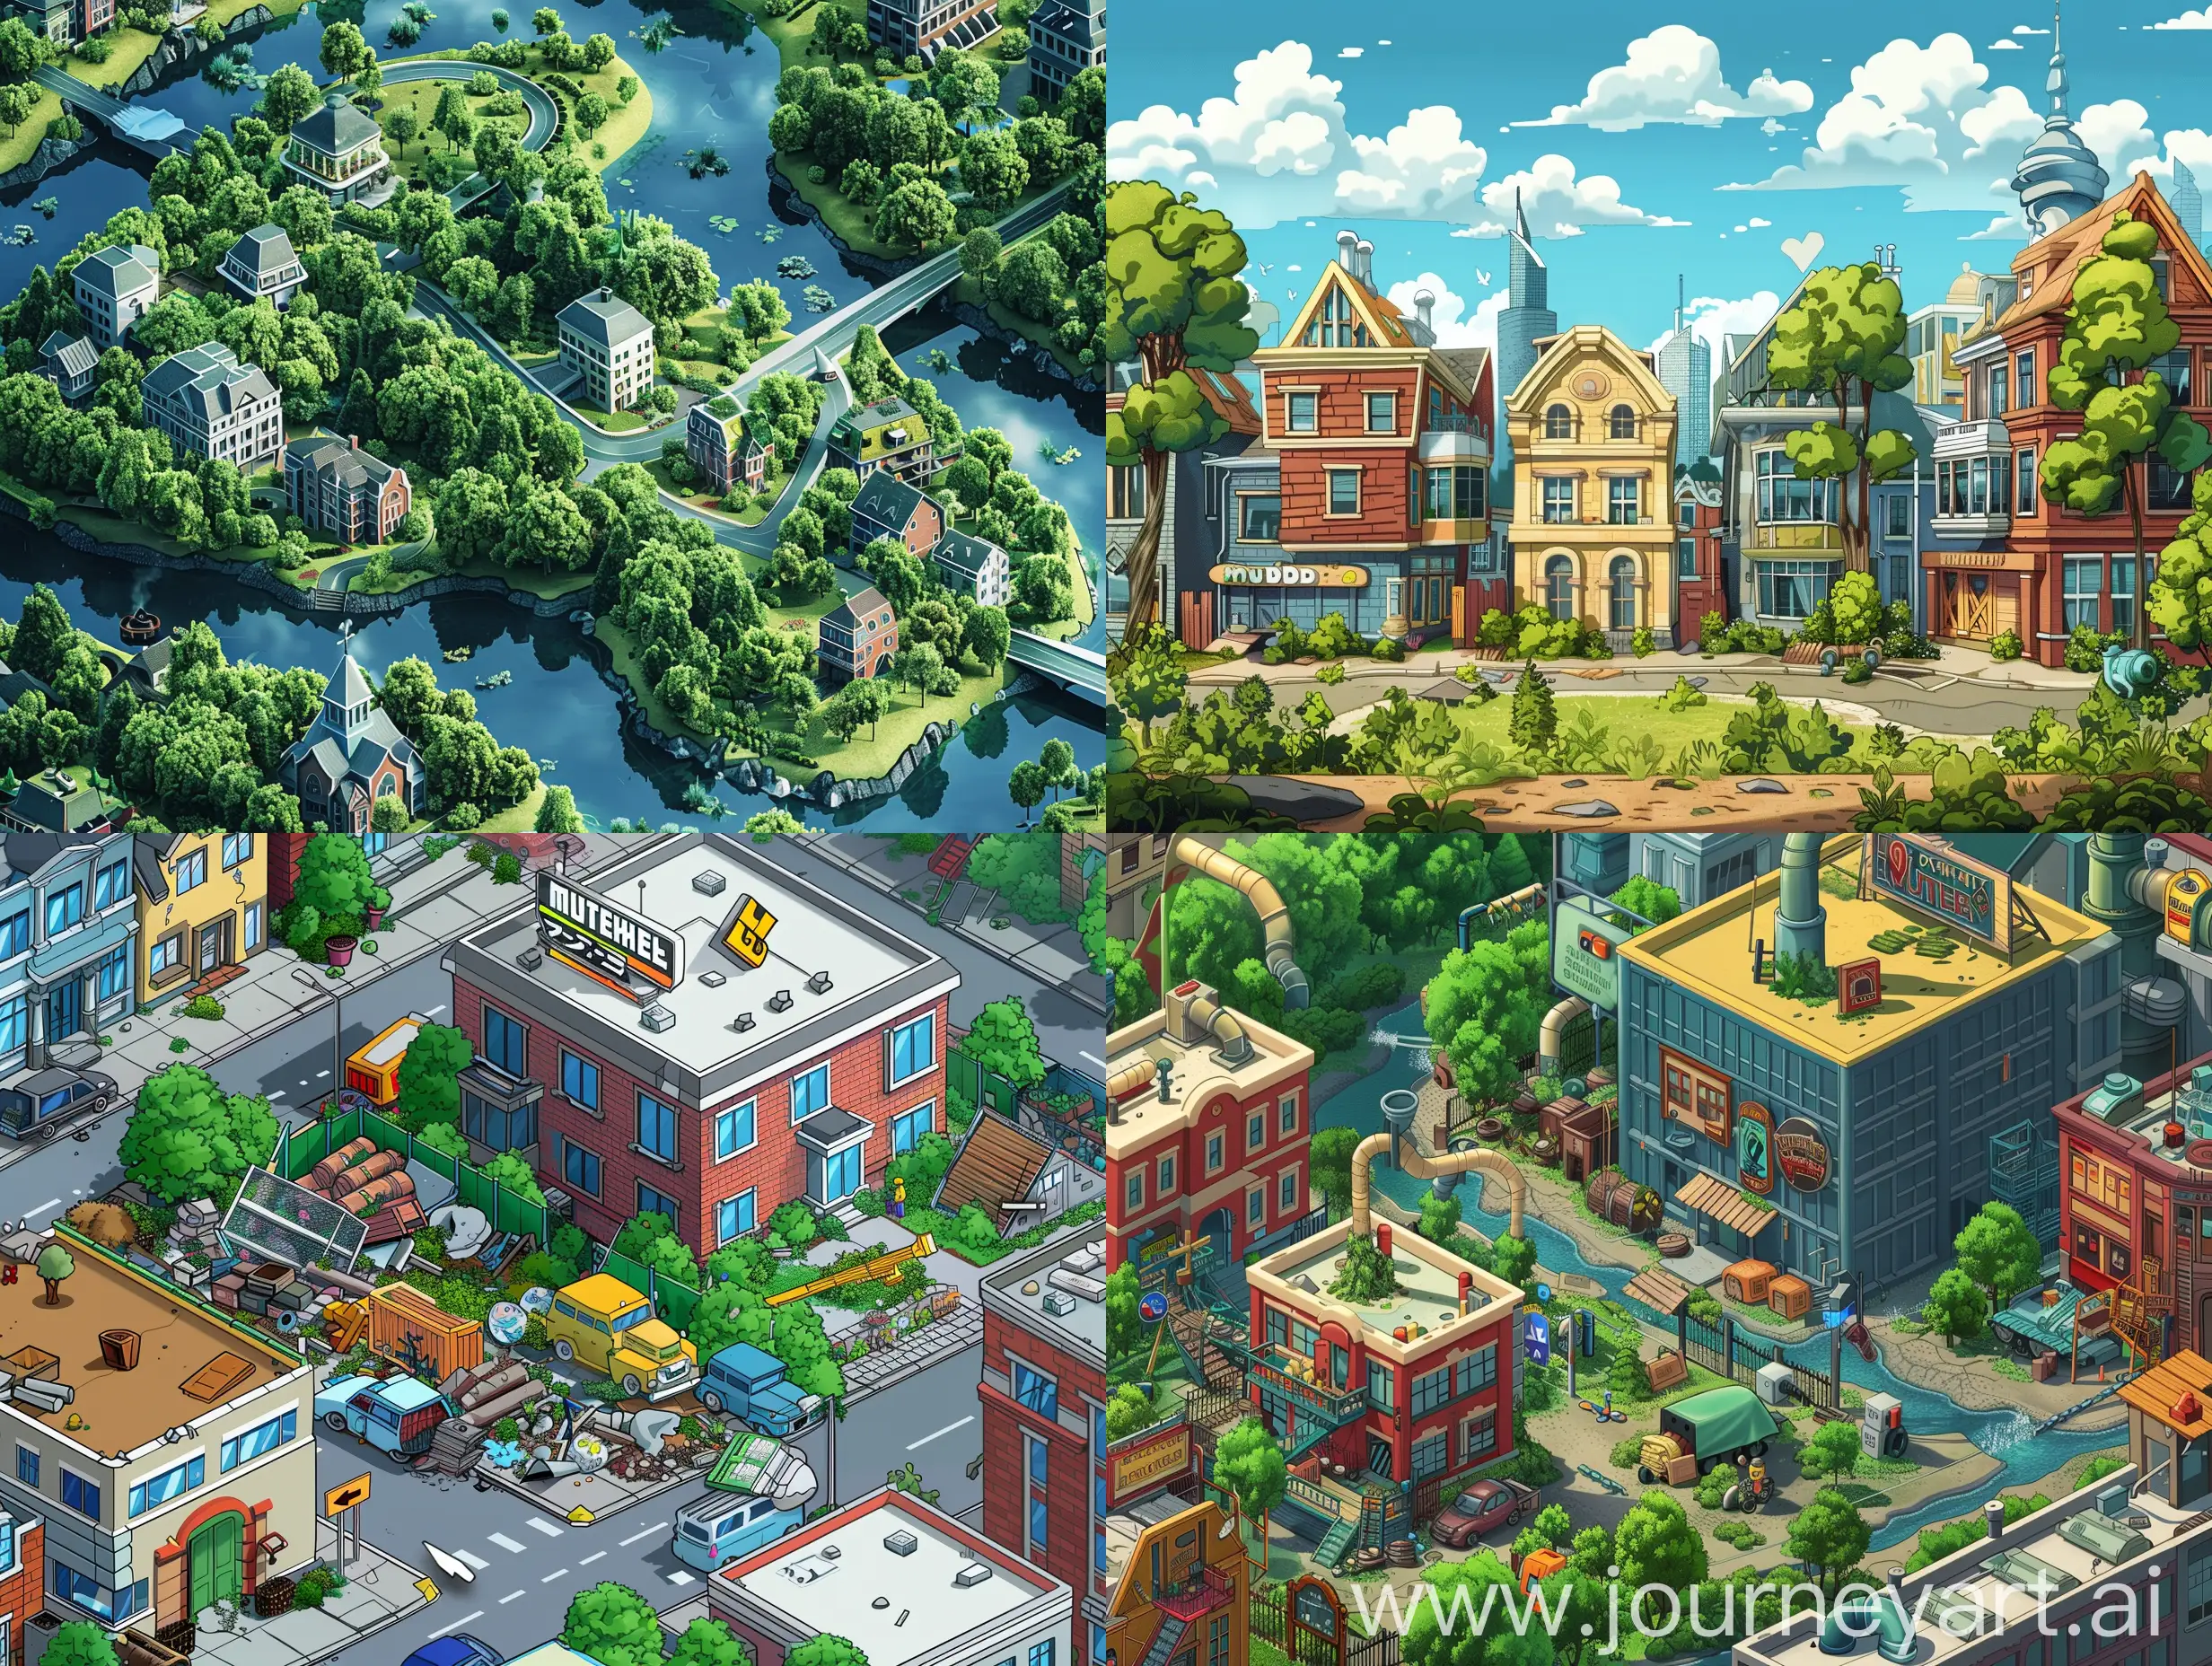 Мудборд для онлайн игры про экологию в городе, где нужно решать экологические проблемы этого города